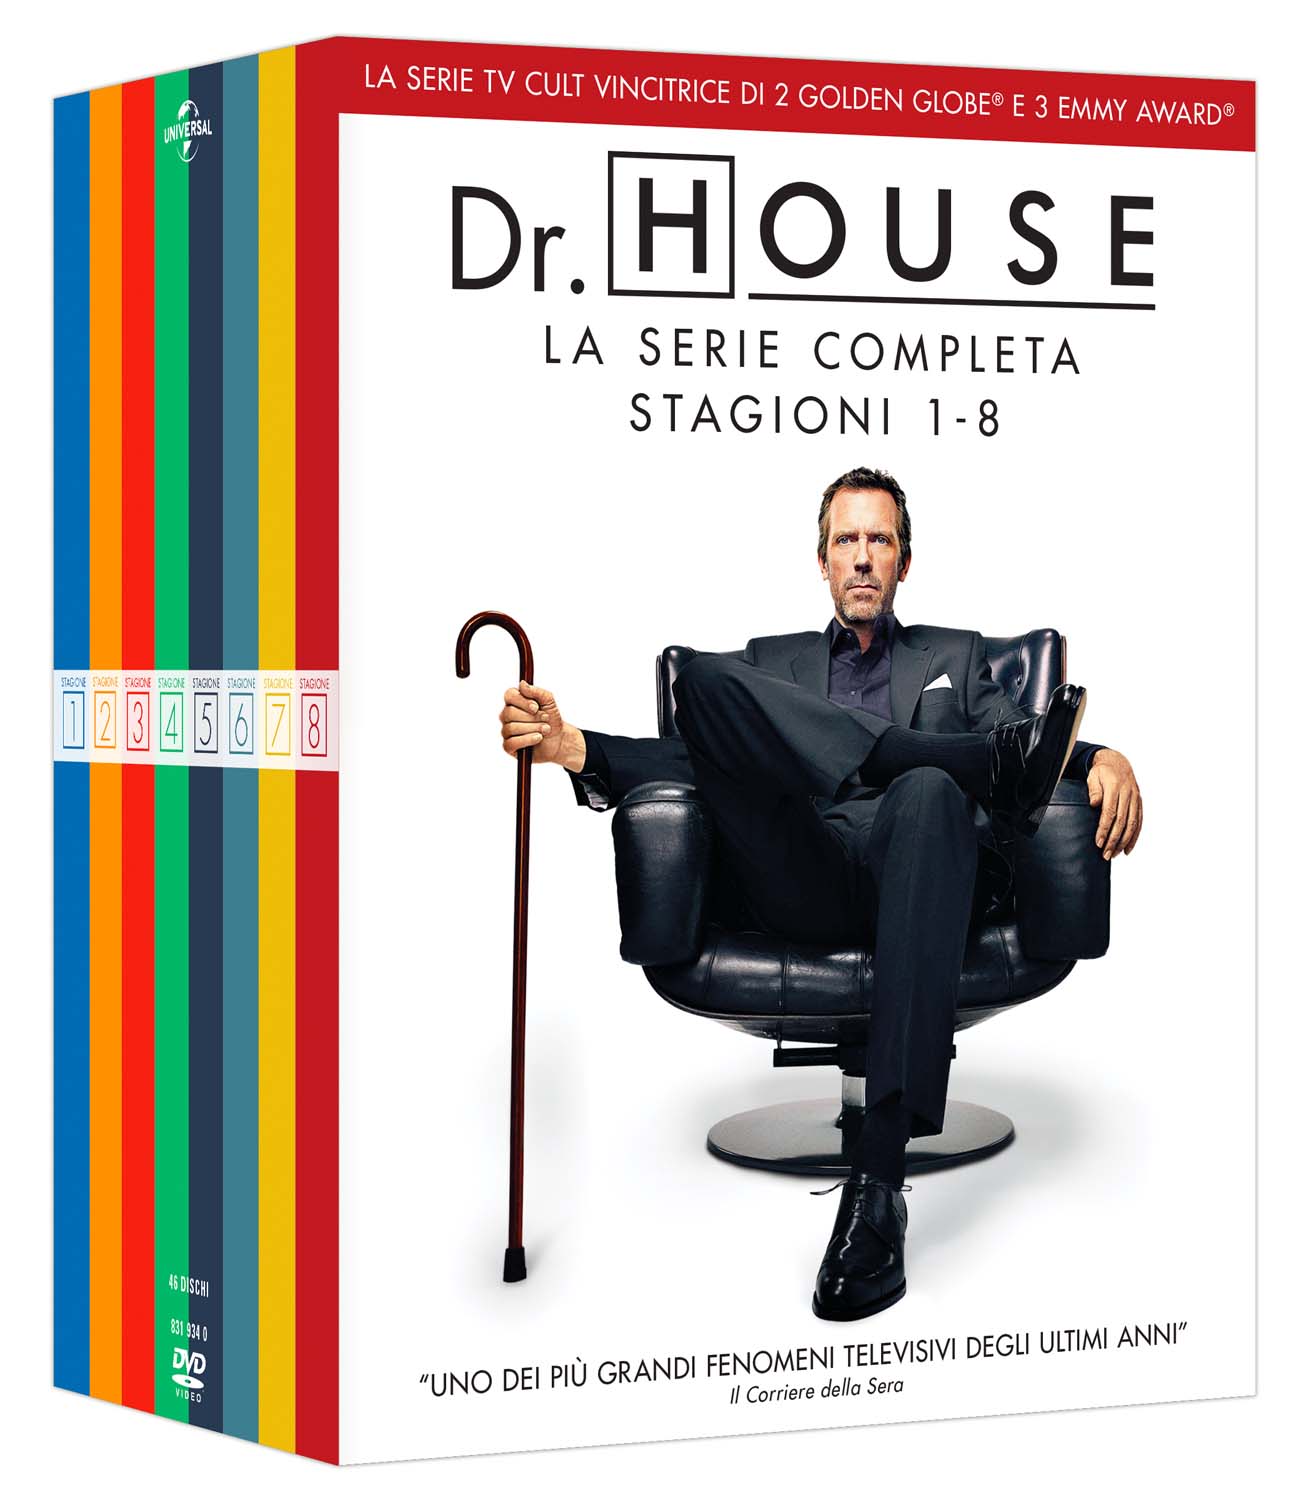 Dvd Dr. House - La Serie Completa (46 Dvd) NUOVO SIGILLATO, EDIZIONE DEL 28/08/2019 SUBITO DISPONIBILE